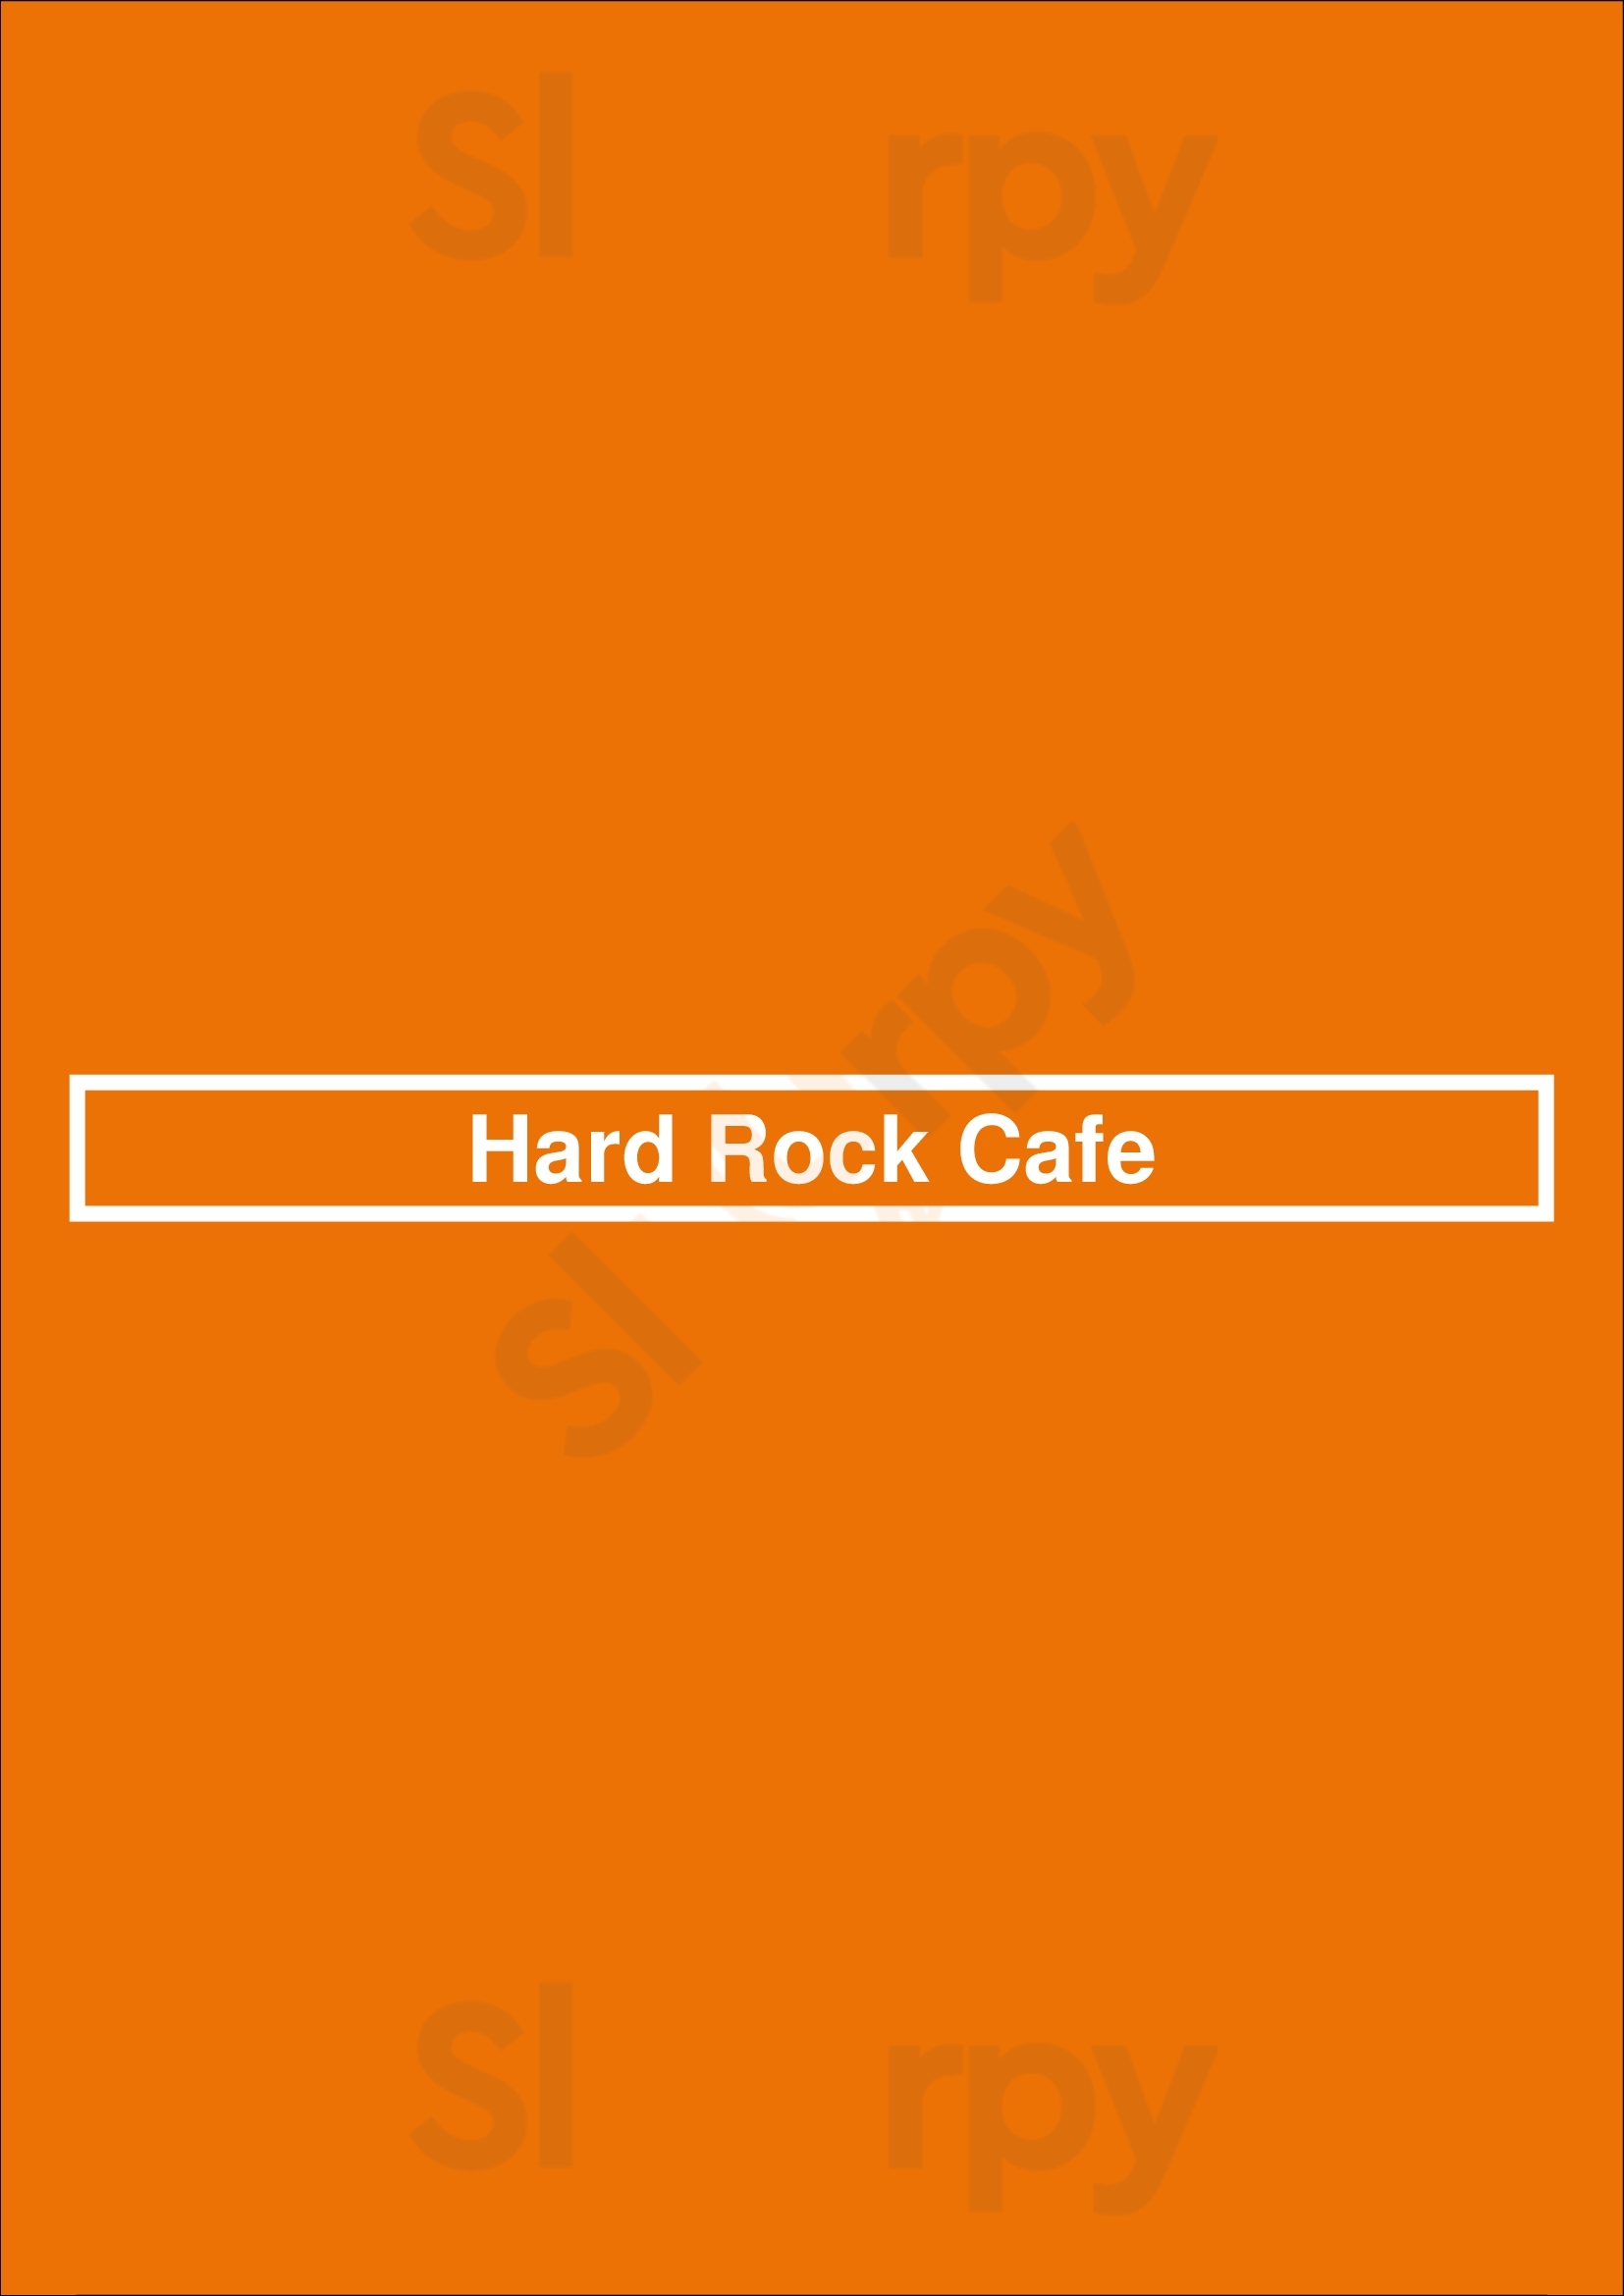 Hard Rock Cafe Nashville Menu - 1